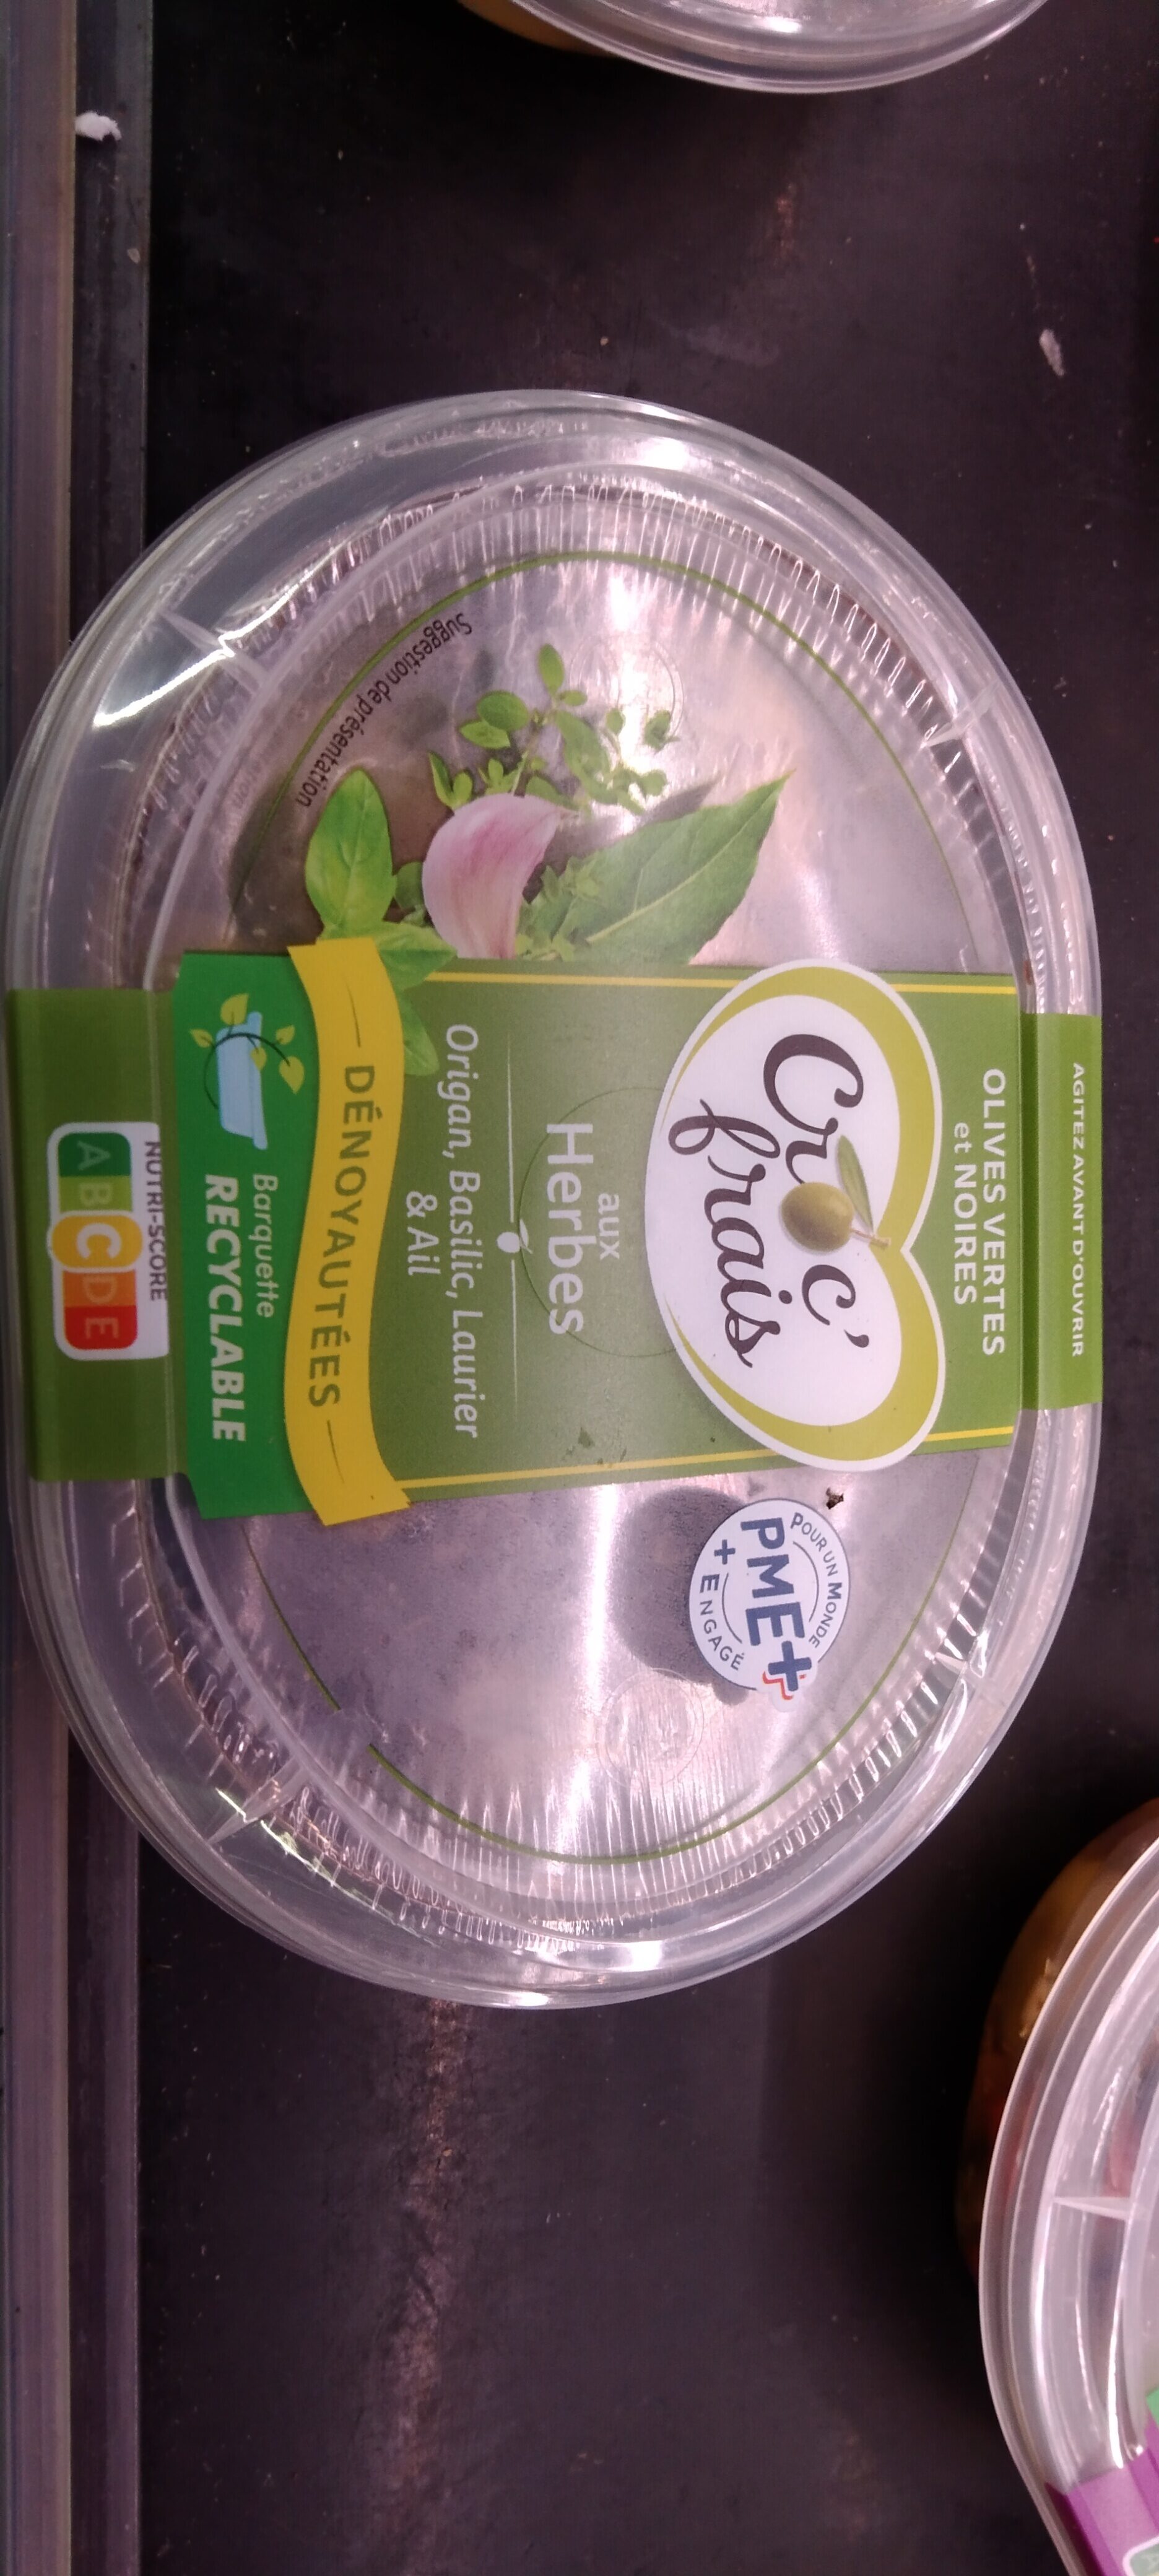 Olives aux Herbes - Produit